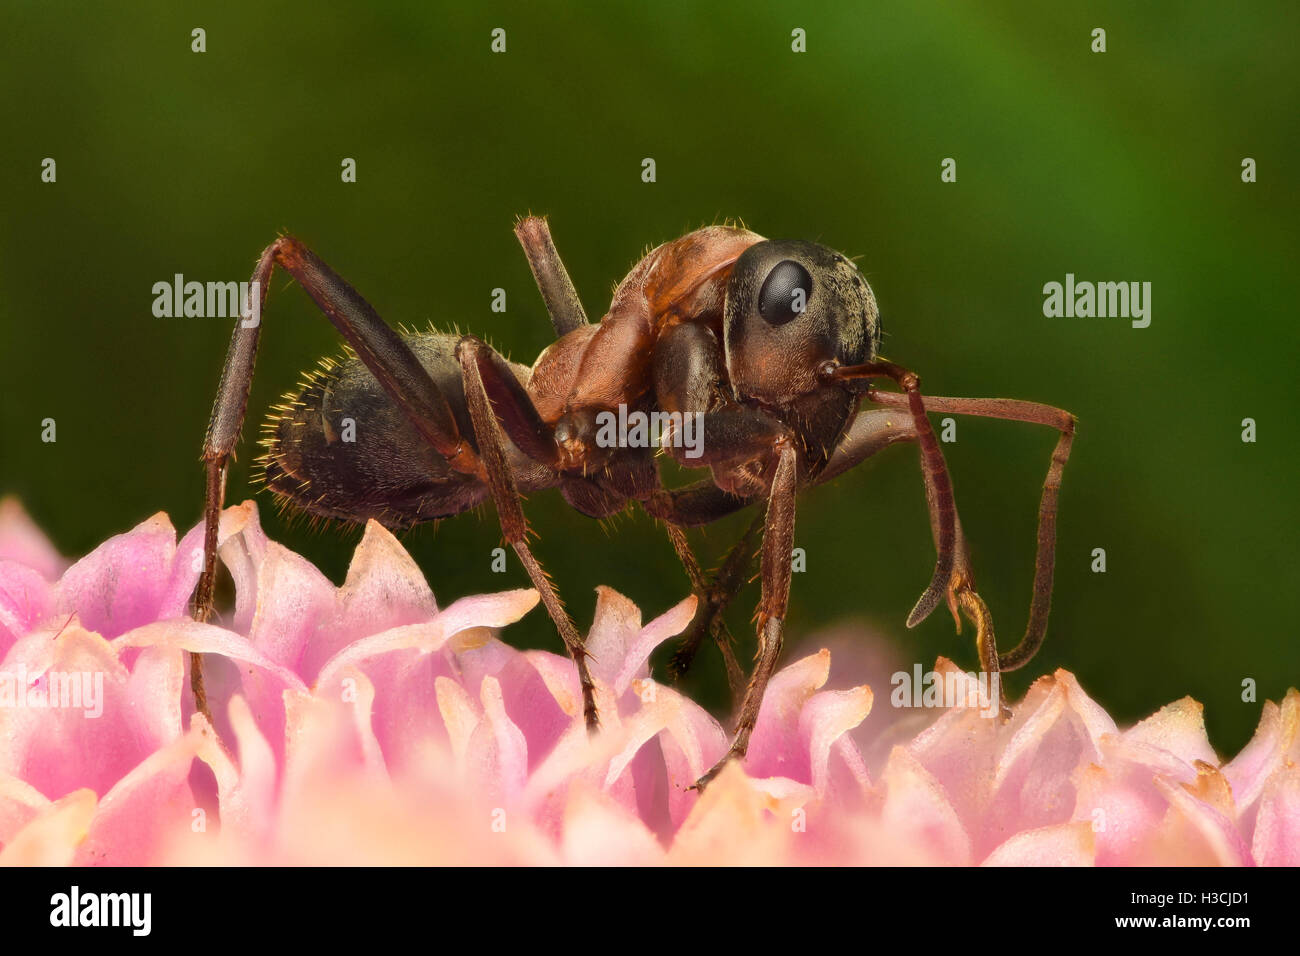 Hohe Vergrößerung - Ameise auf Blume Stockfoto